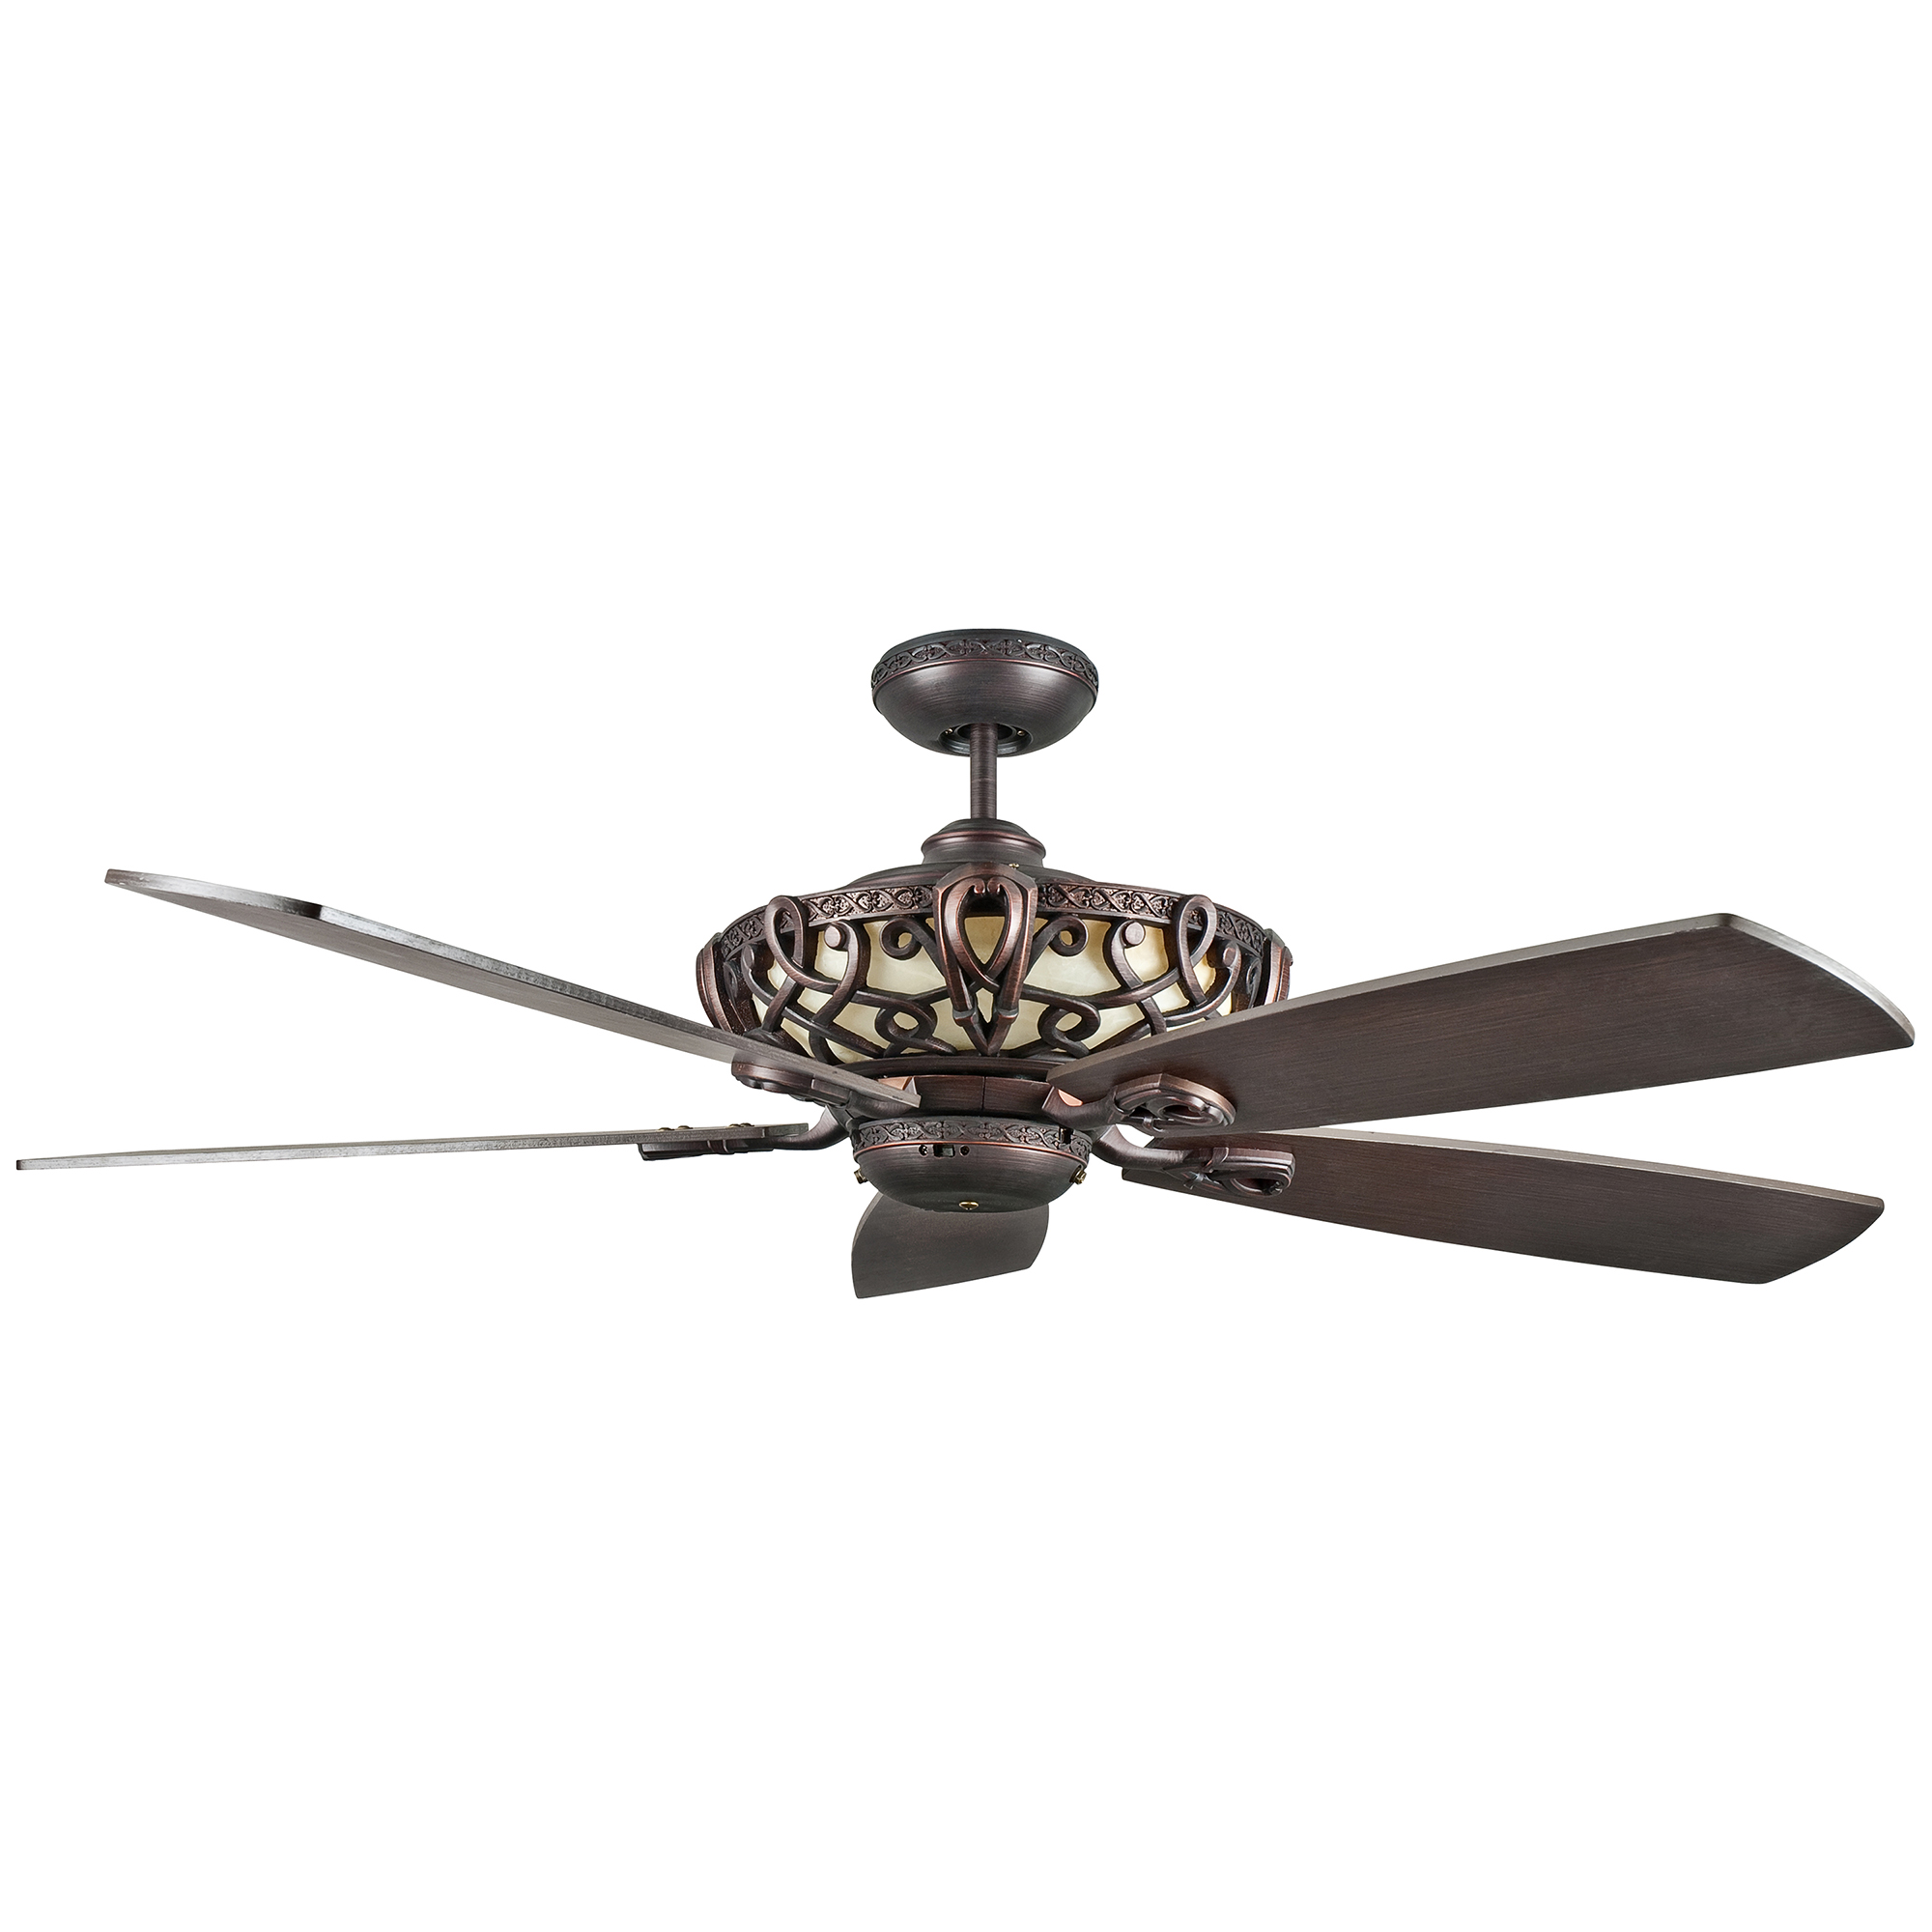 Aracruz 52 inch Oil Rubbed Bronze Indoor Ceiling Fan